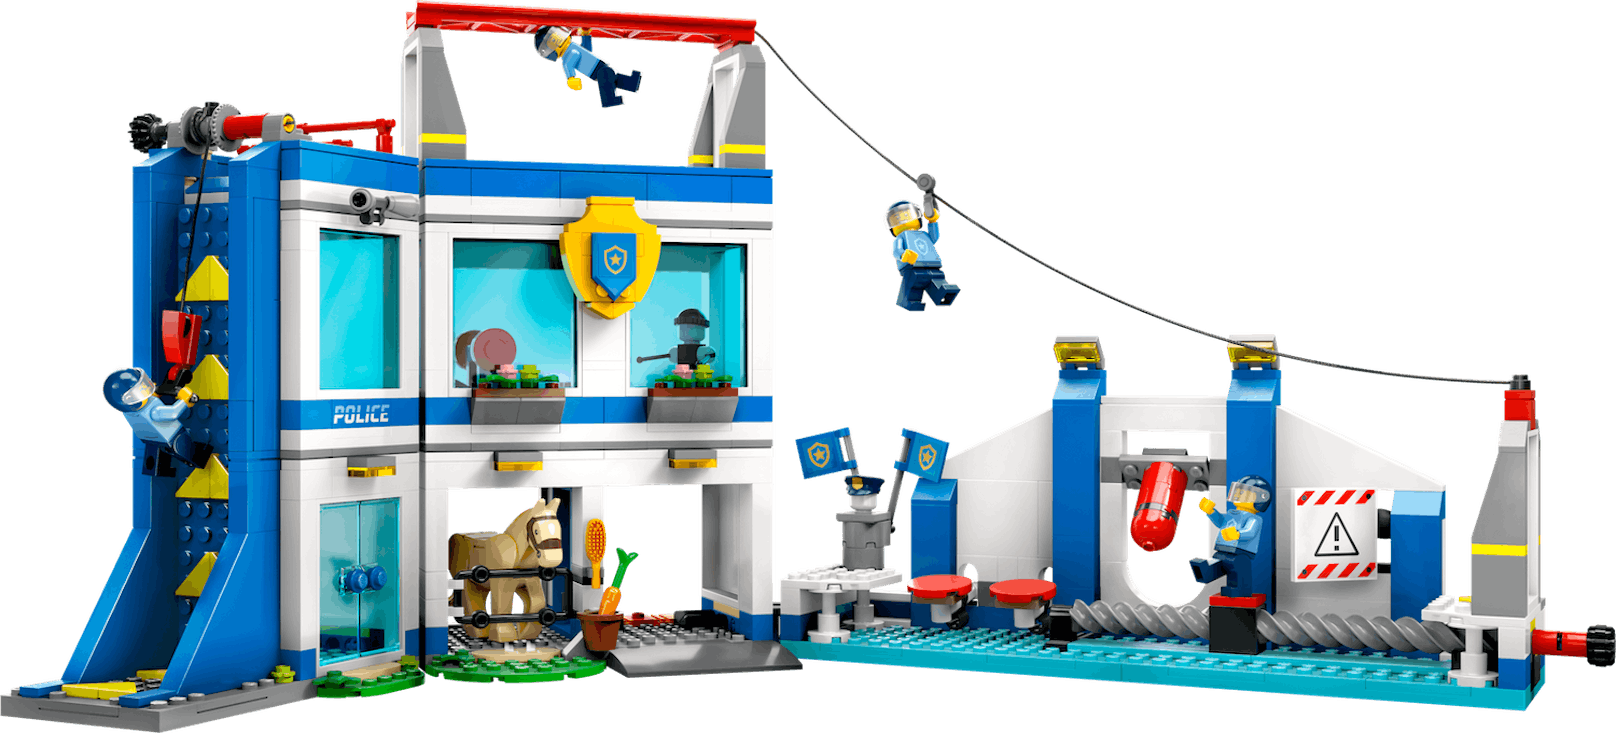 LEGO City Polizeischule: Ab 6 Jahren, 89,99 Euro